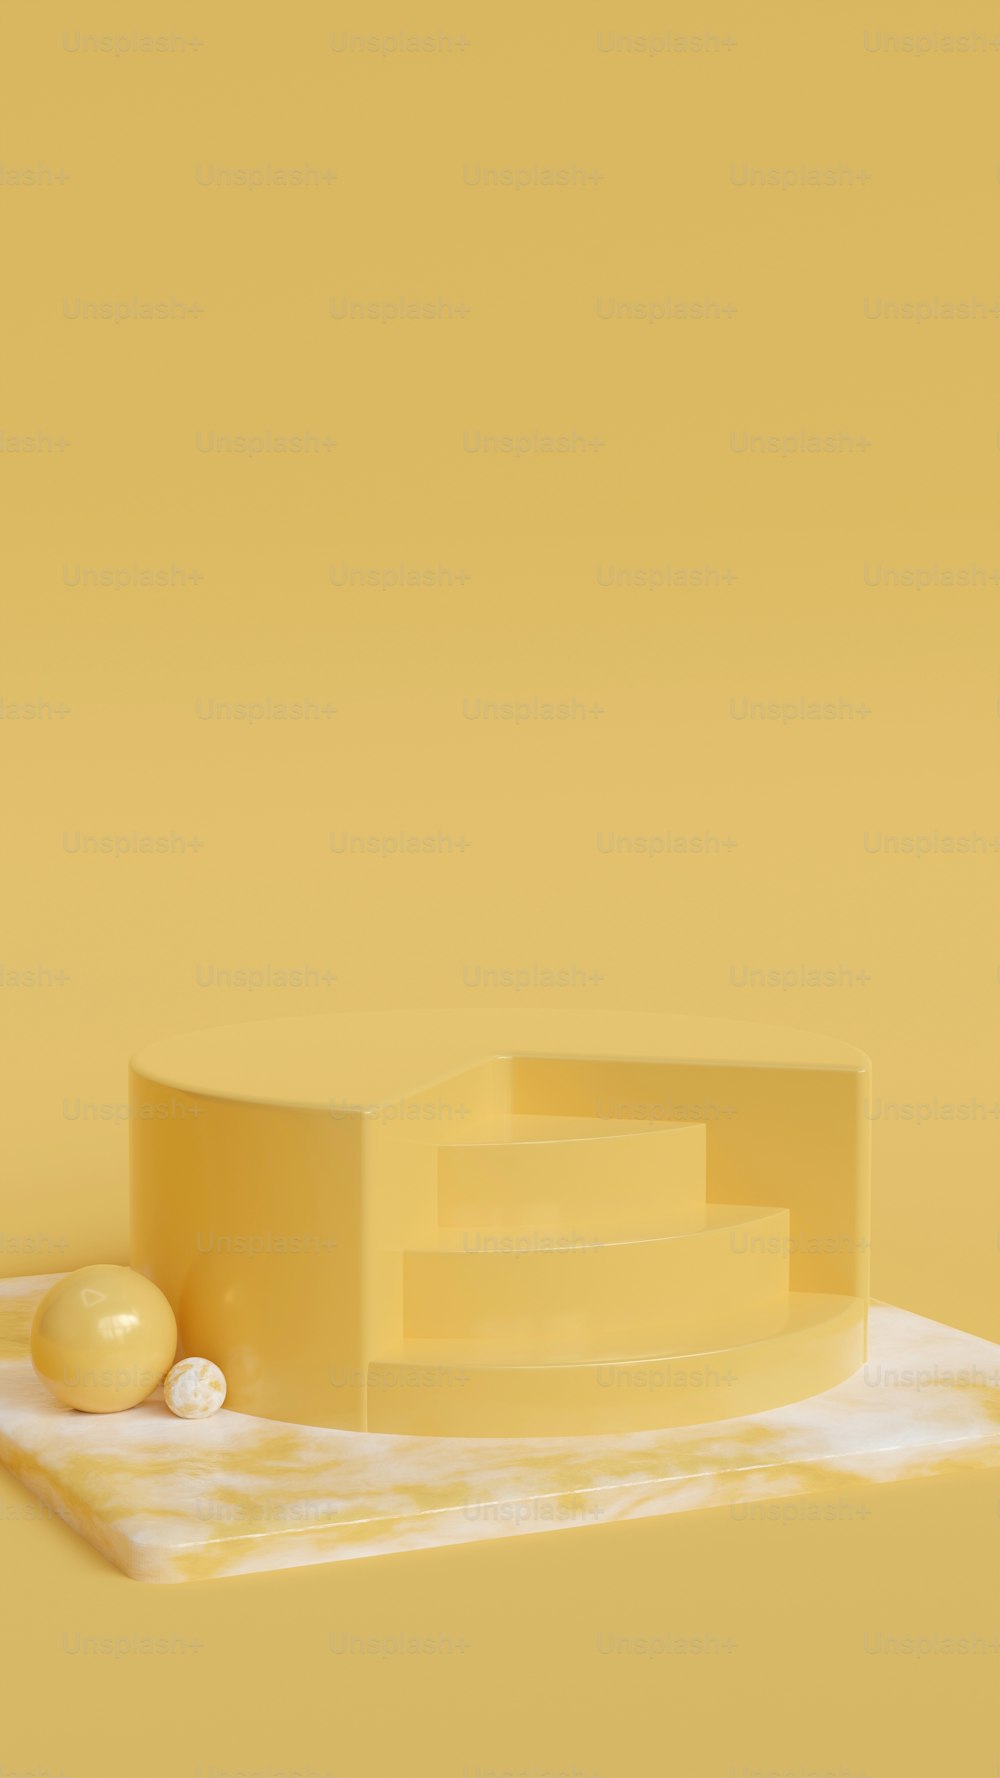 Un trozo de queso sentado encima de una mesa